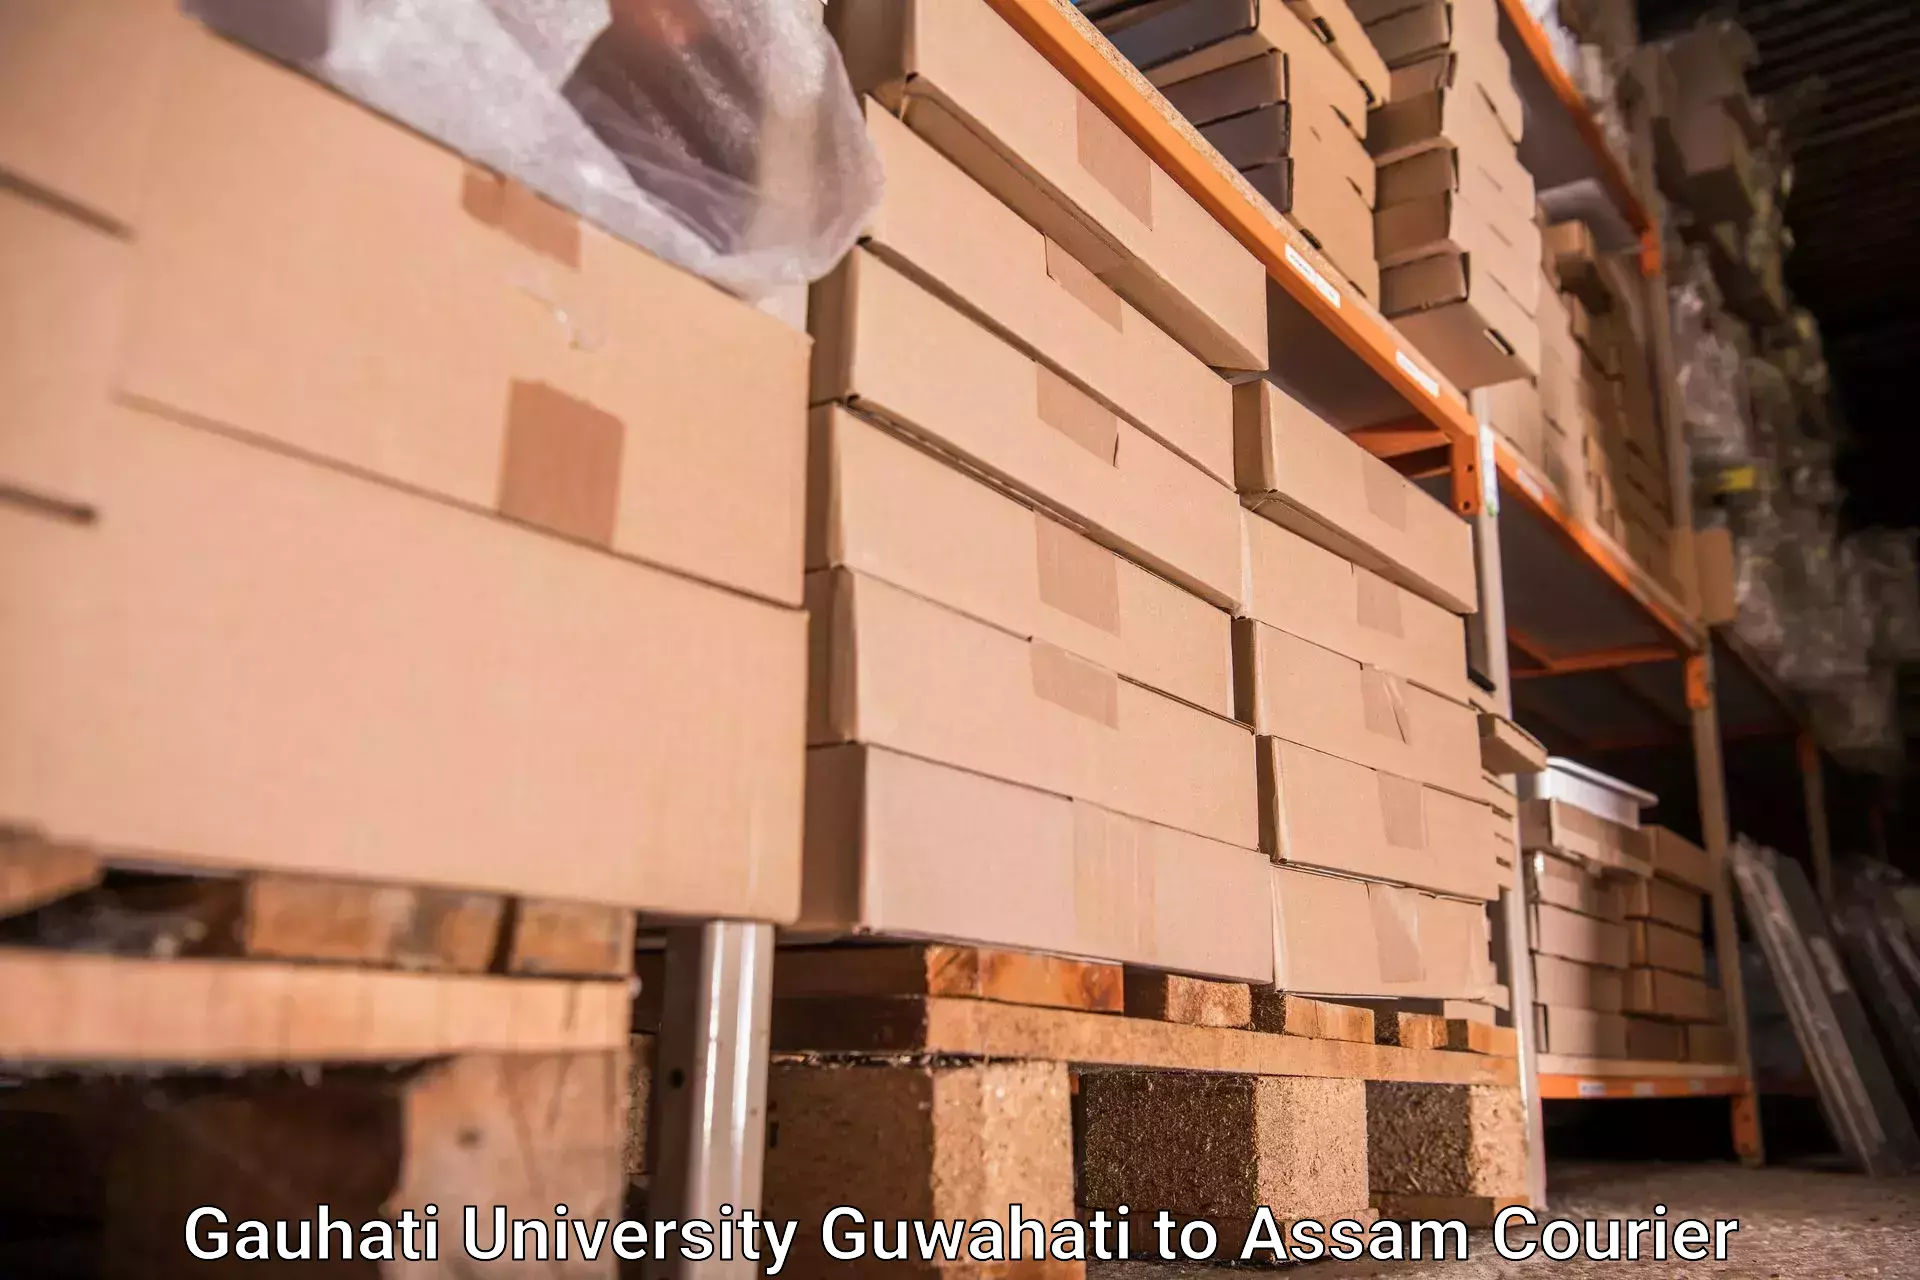 Luggage forwarding service Gauhati University Guwahati to Assam